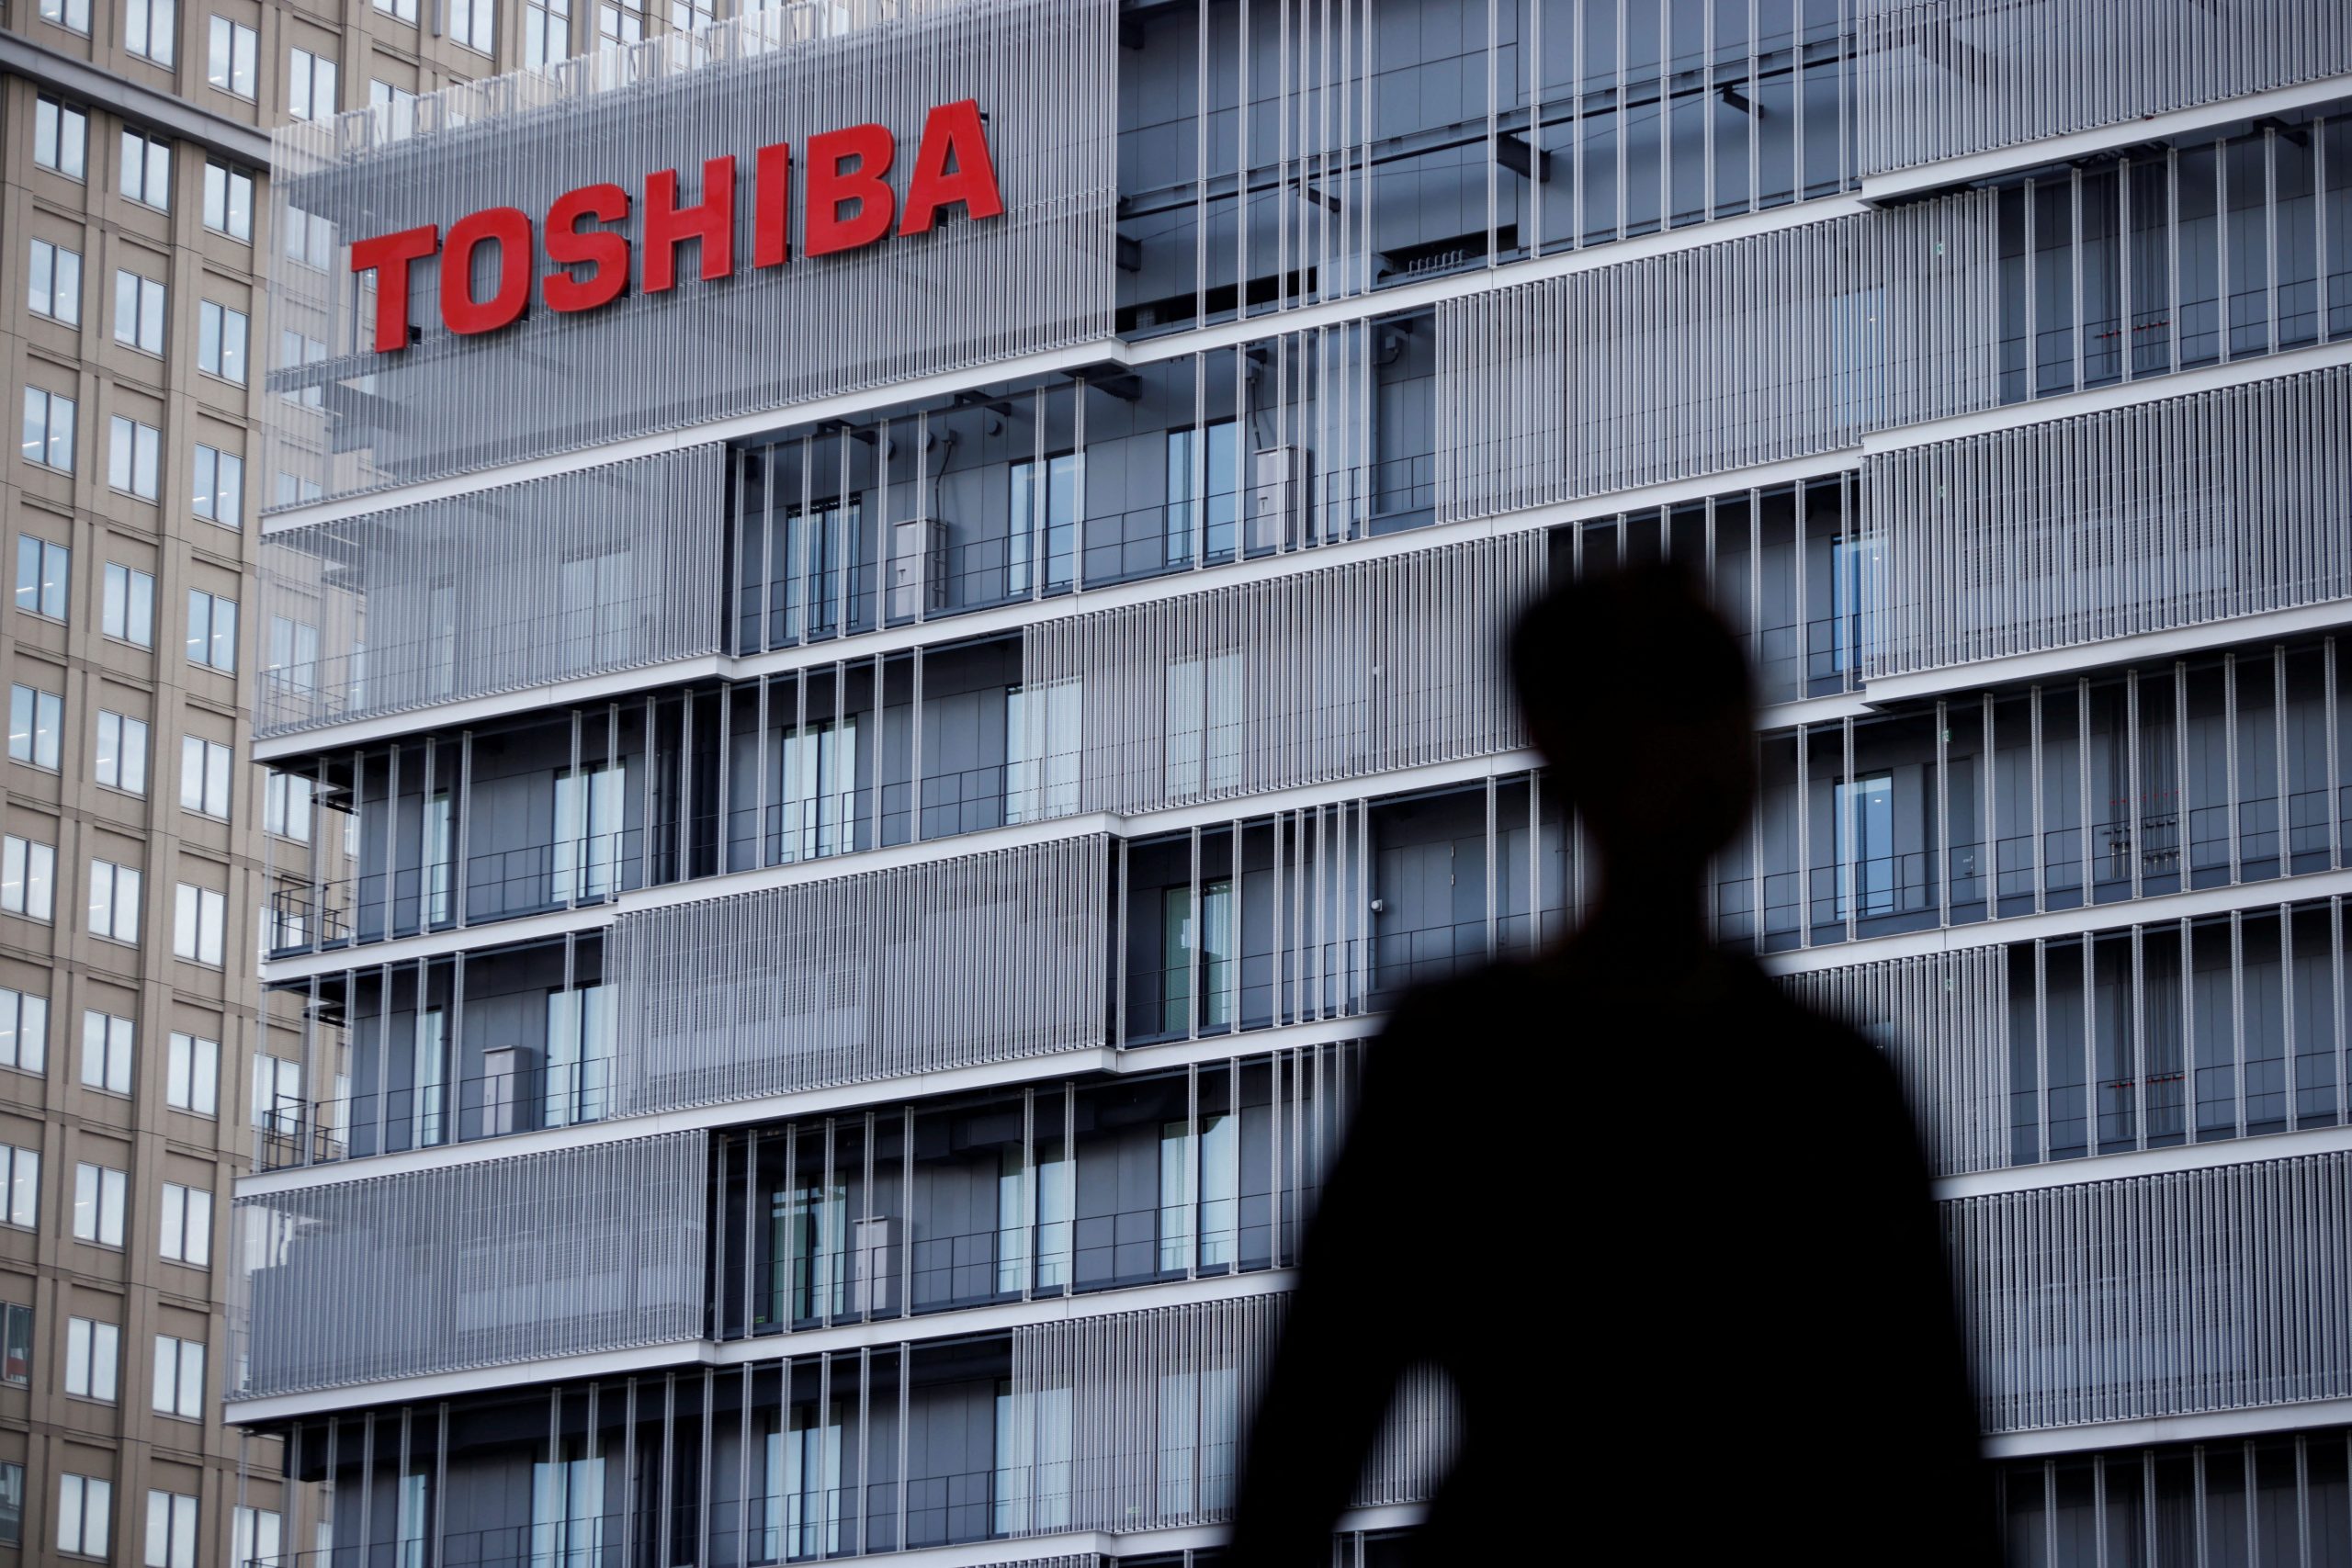 Toshiba gives shareholder management masterclass